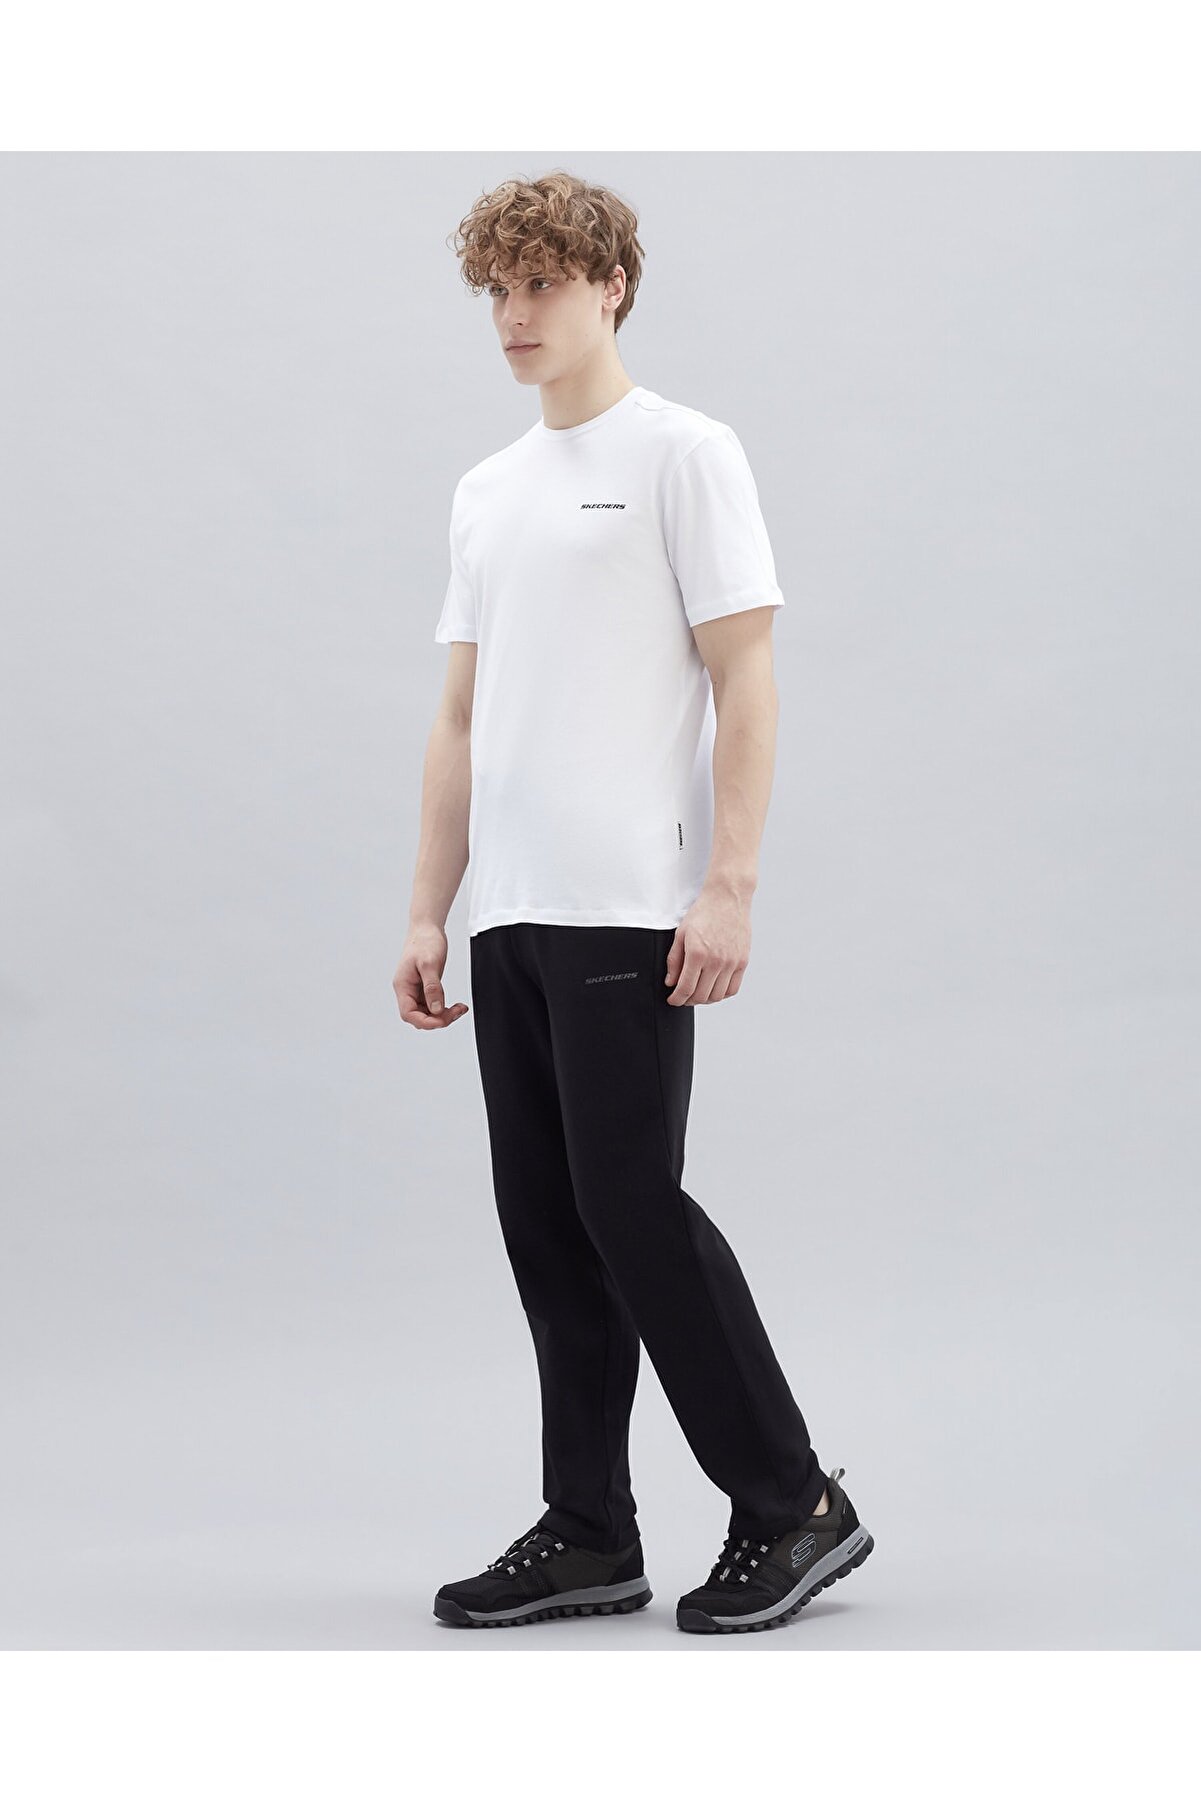 Skechers M New Basics Crew Neck T-Shirt Erkek Off White Tshirt - S212910-102